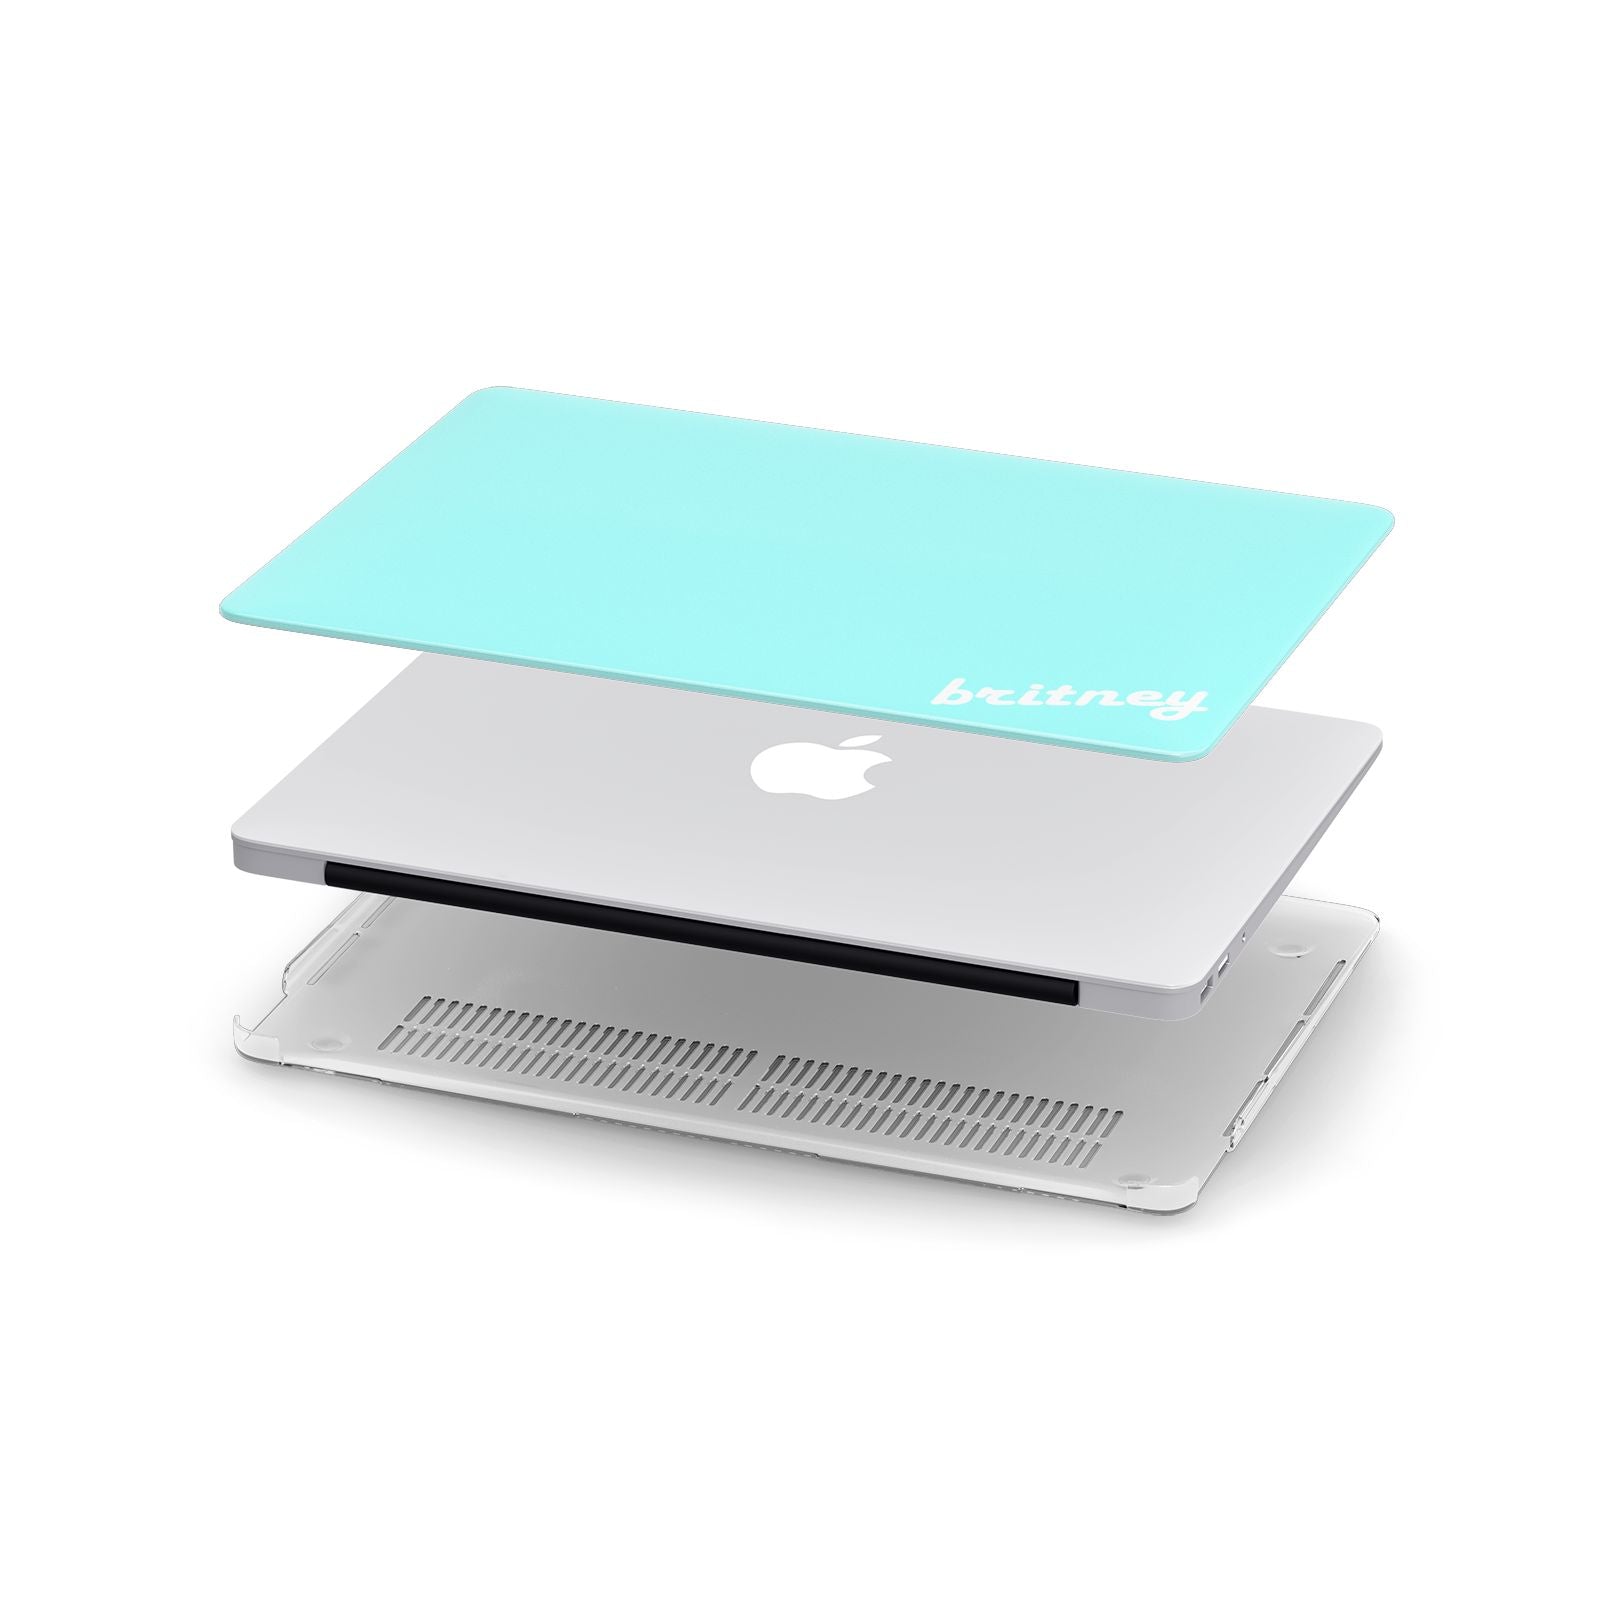 Personalised Blue Name Apple MacBook Case in Detail